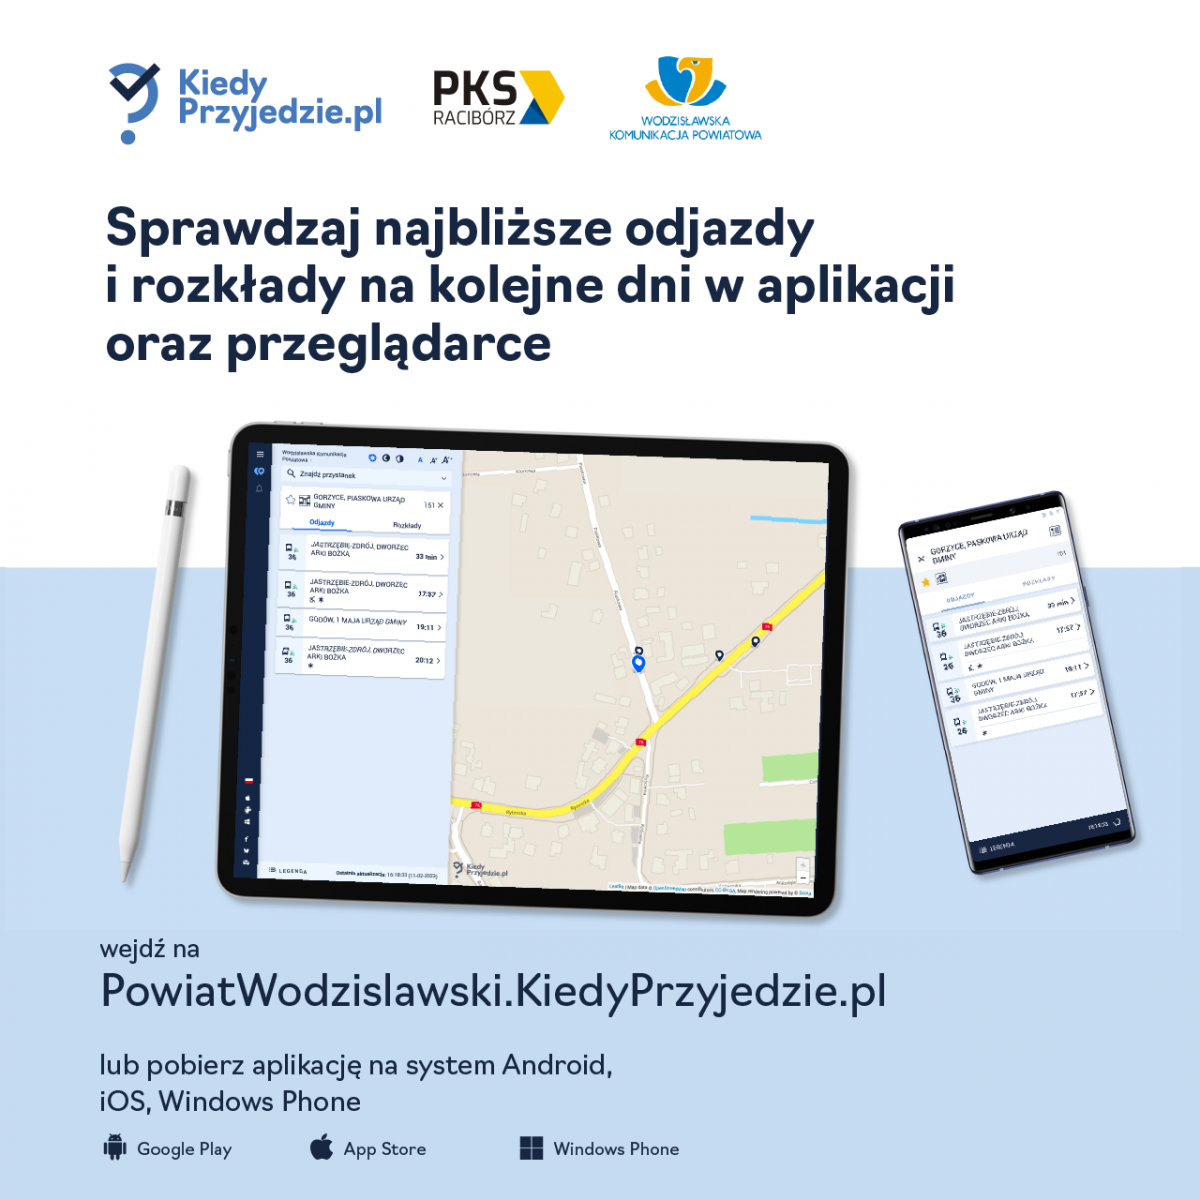 grafika promująca aplikację kiedyprzyjedzie w Wodzisławskiej komunikacji powiatowej